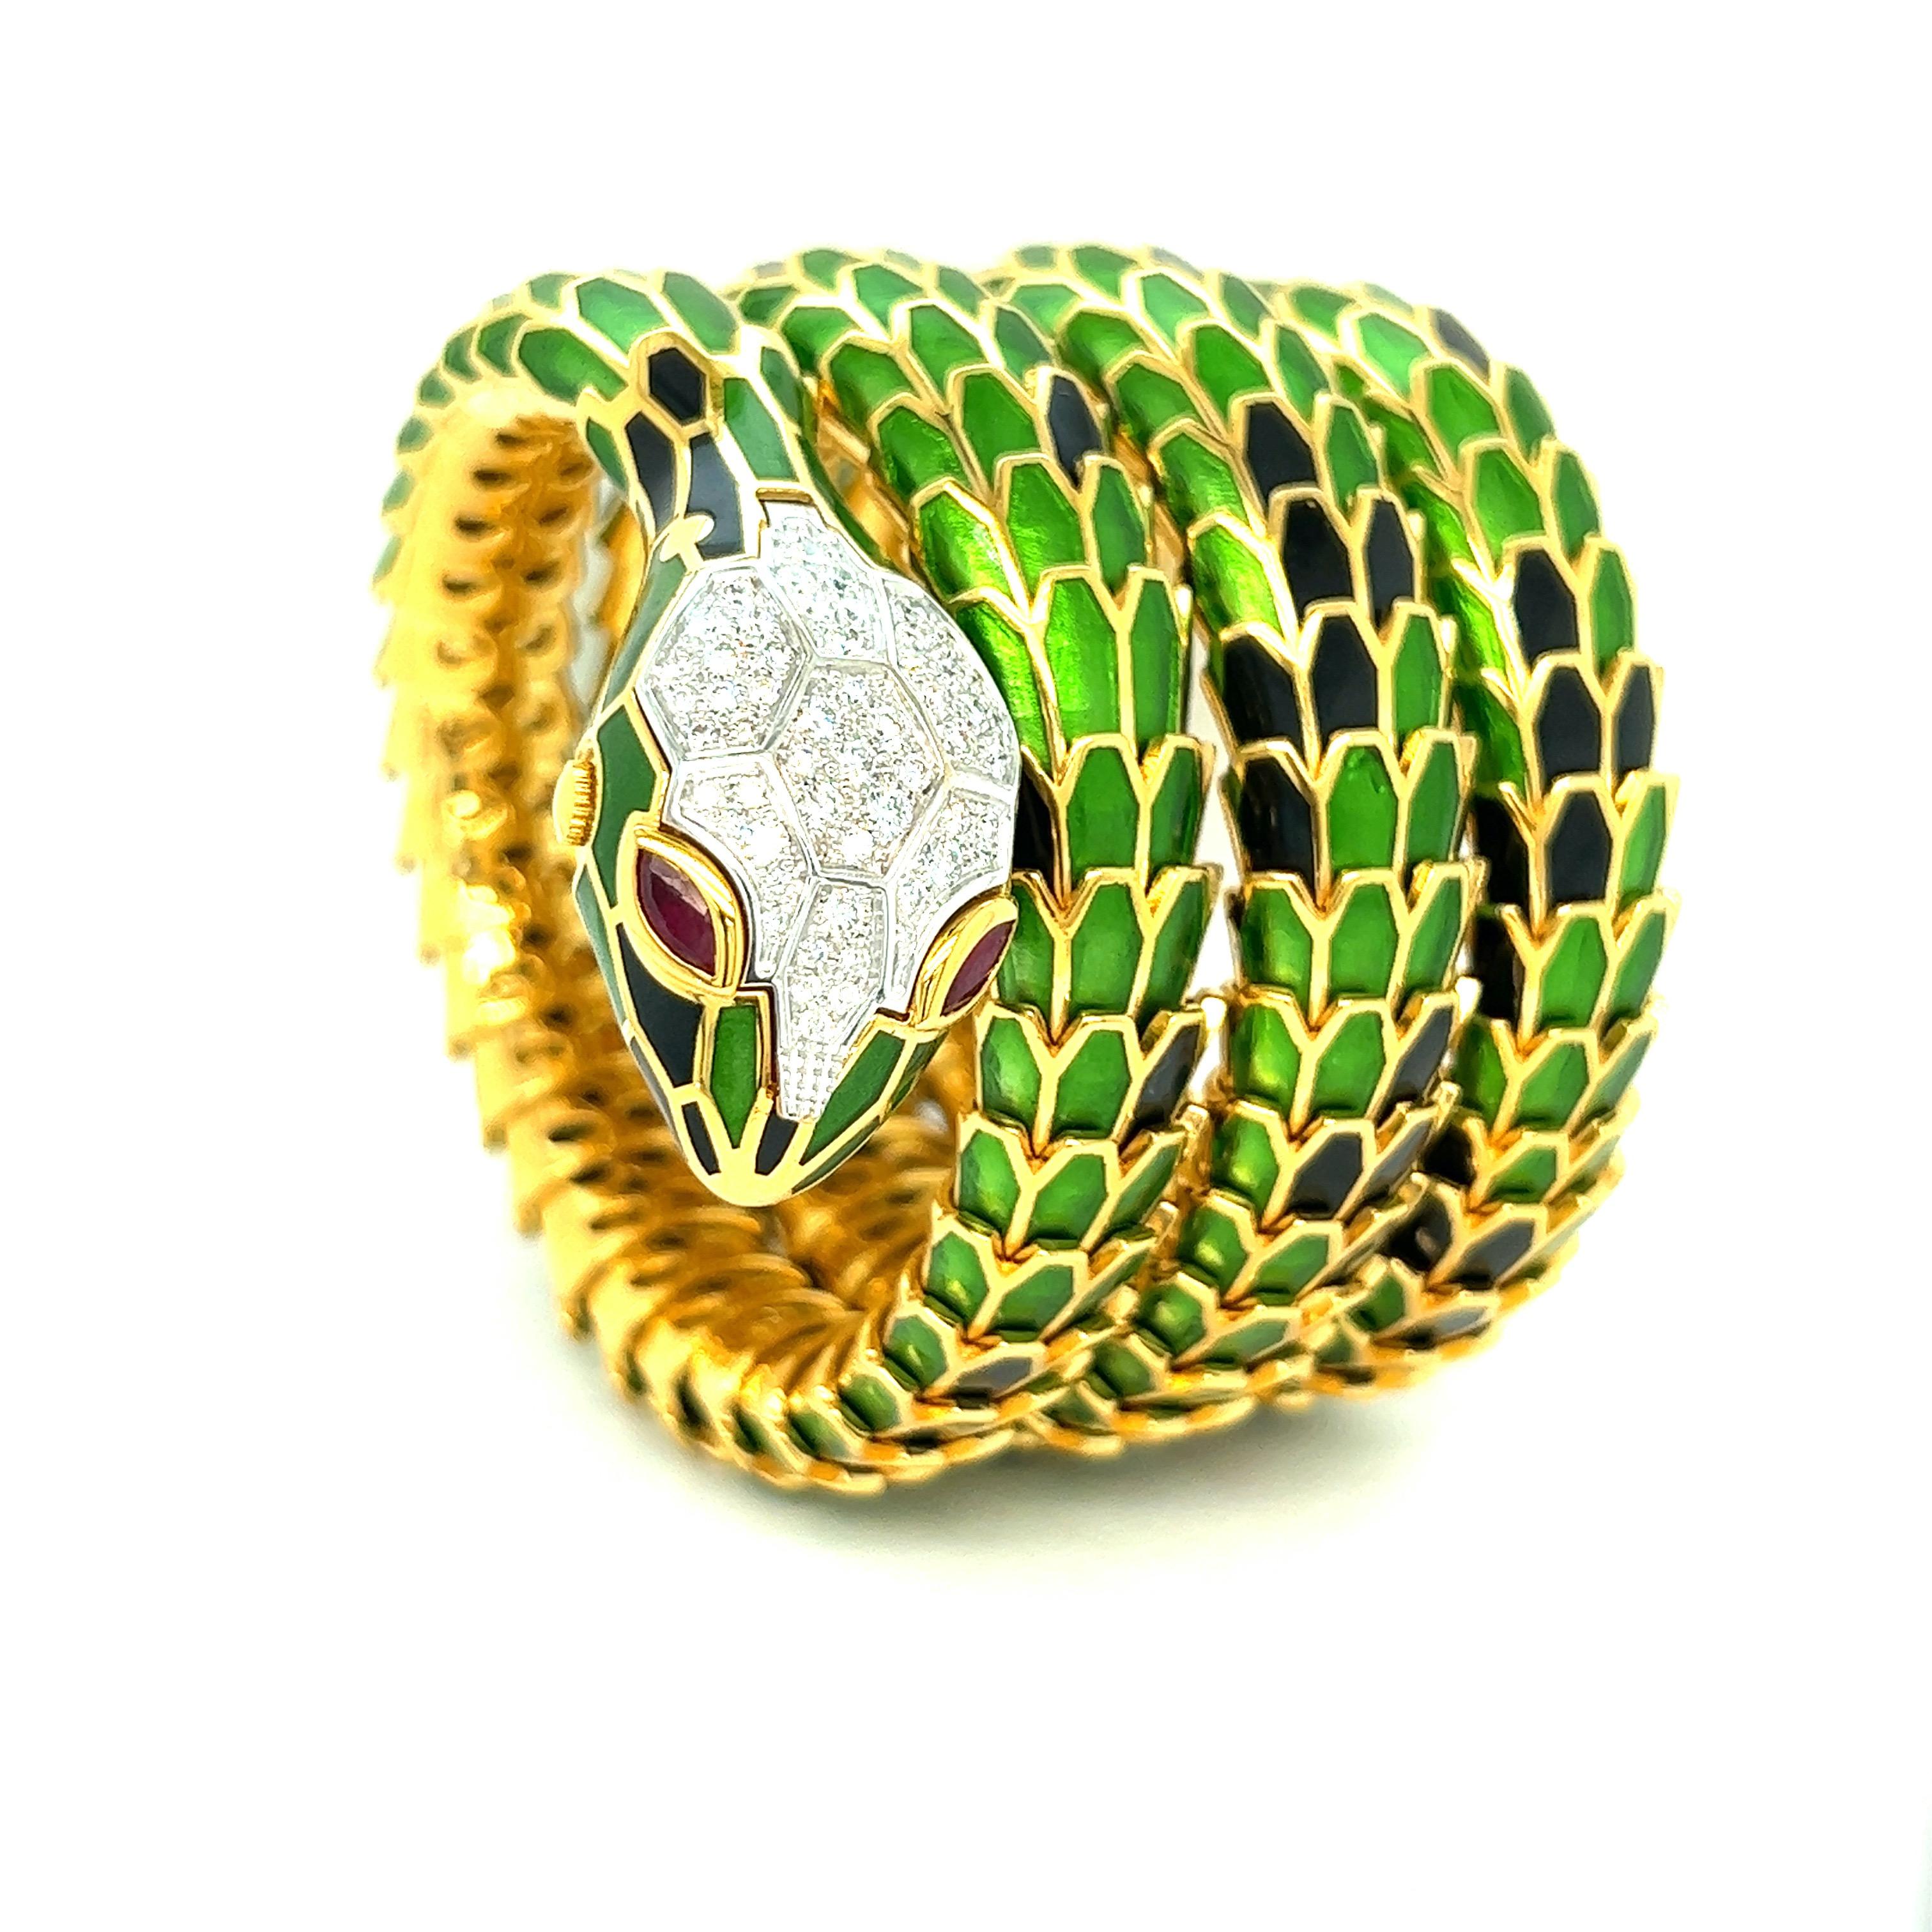 Bracelet montre serpent en émail vert et noir, 4 rangs

Diamants ronds de 1,10 carats, rubis de forme marquise de 0,56 carat, or blanc 18 carats, argent avec un ton d'or jaune ; marqué 750, 925, D. 1,10, R. 0,56, BW007Y4M09MBK-0167

Taille :